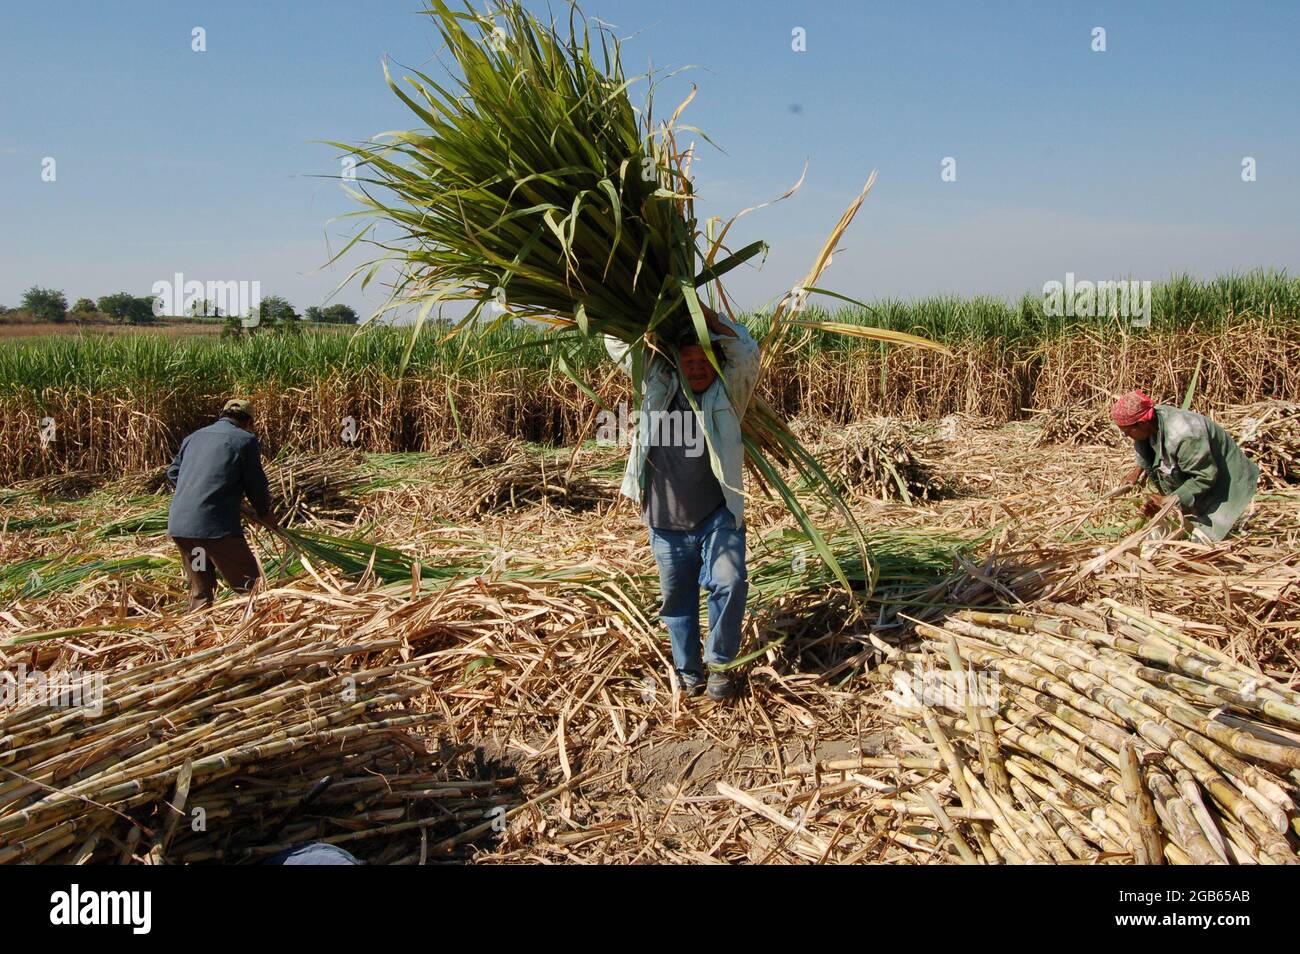 Campesinos raccolta caña (canna da zucchero) Foto Stock